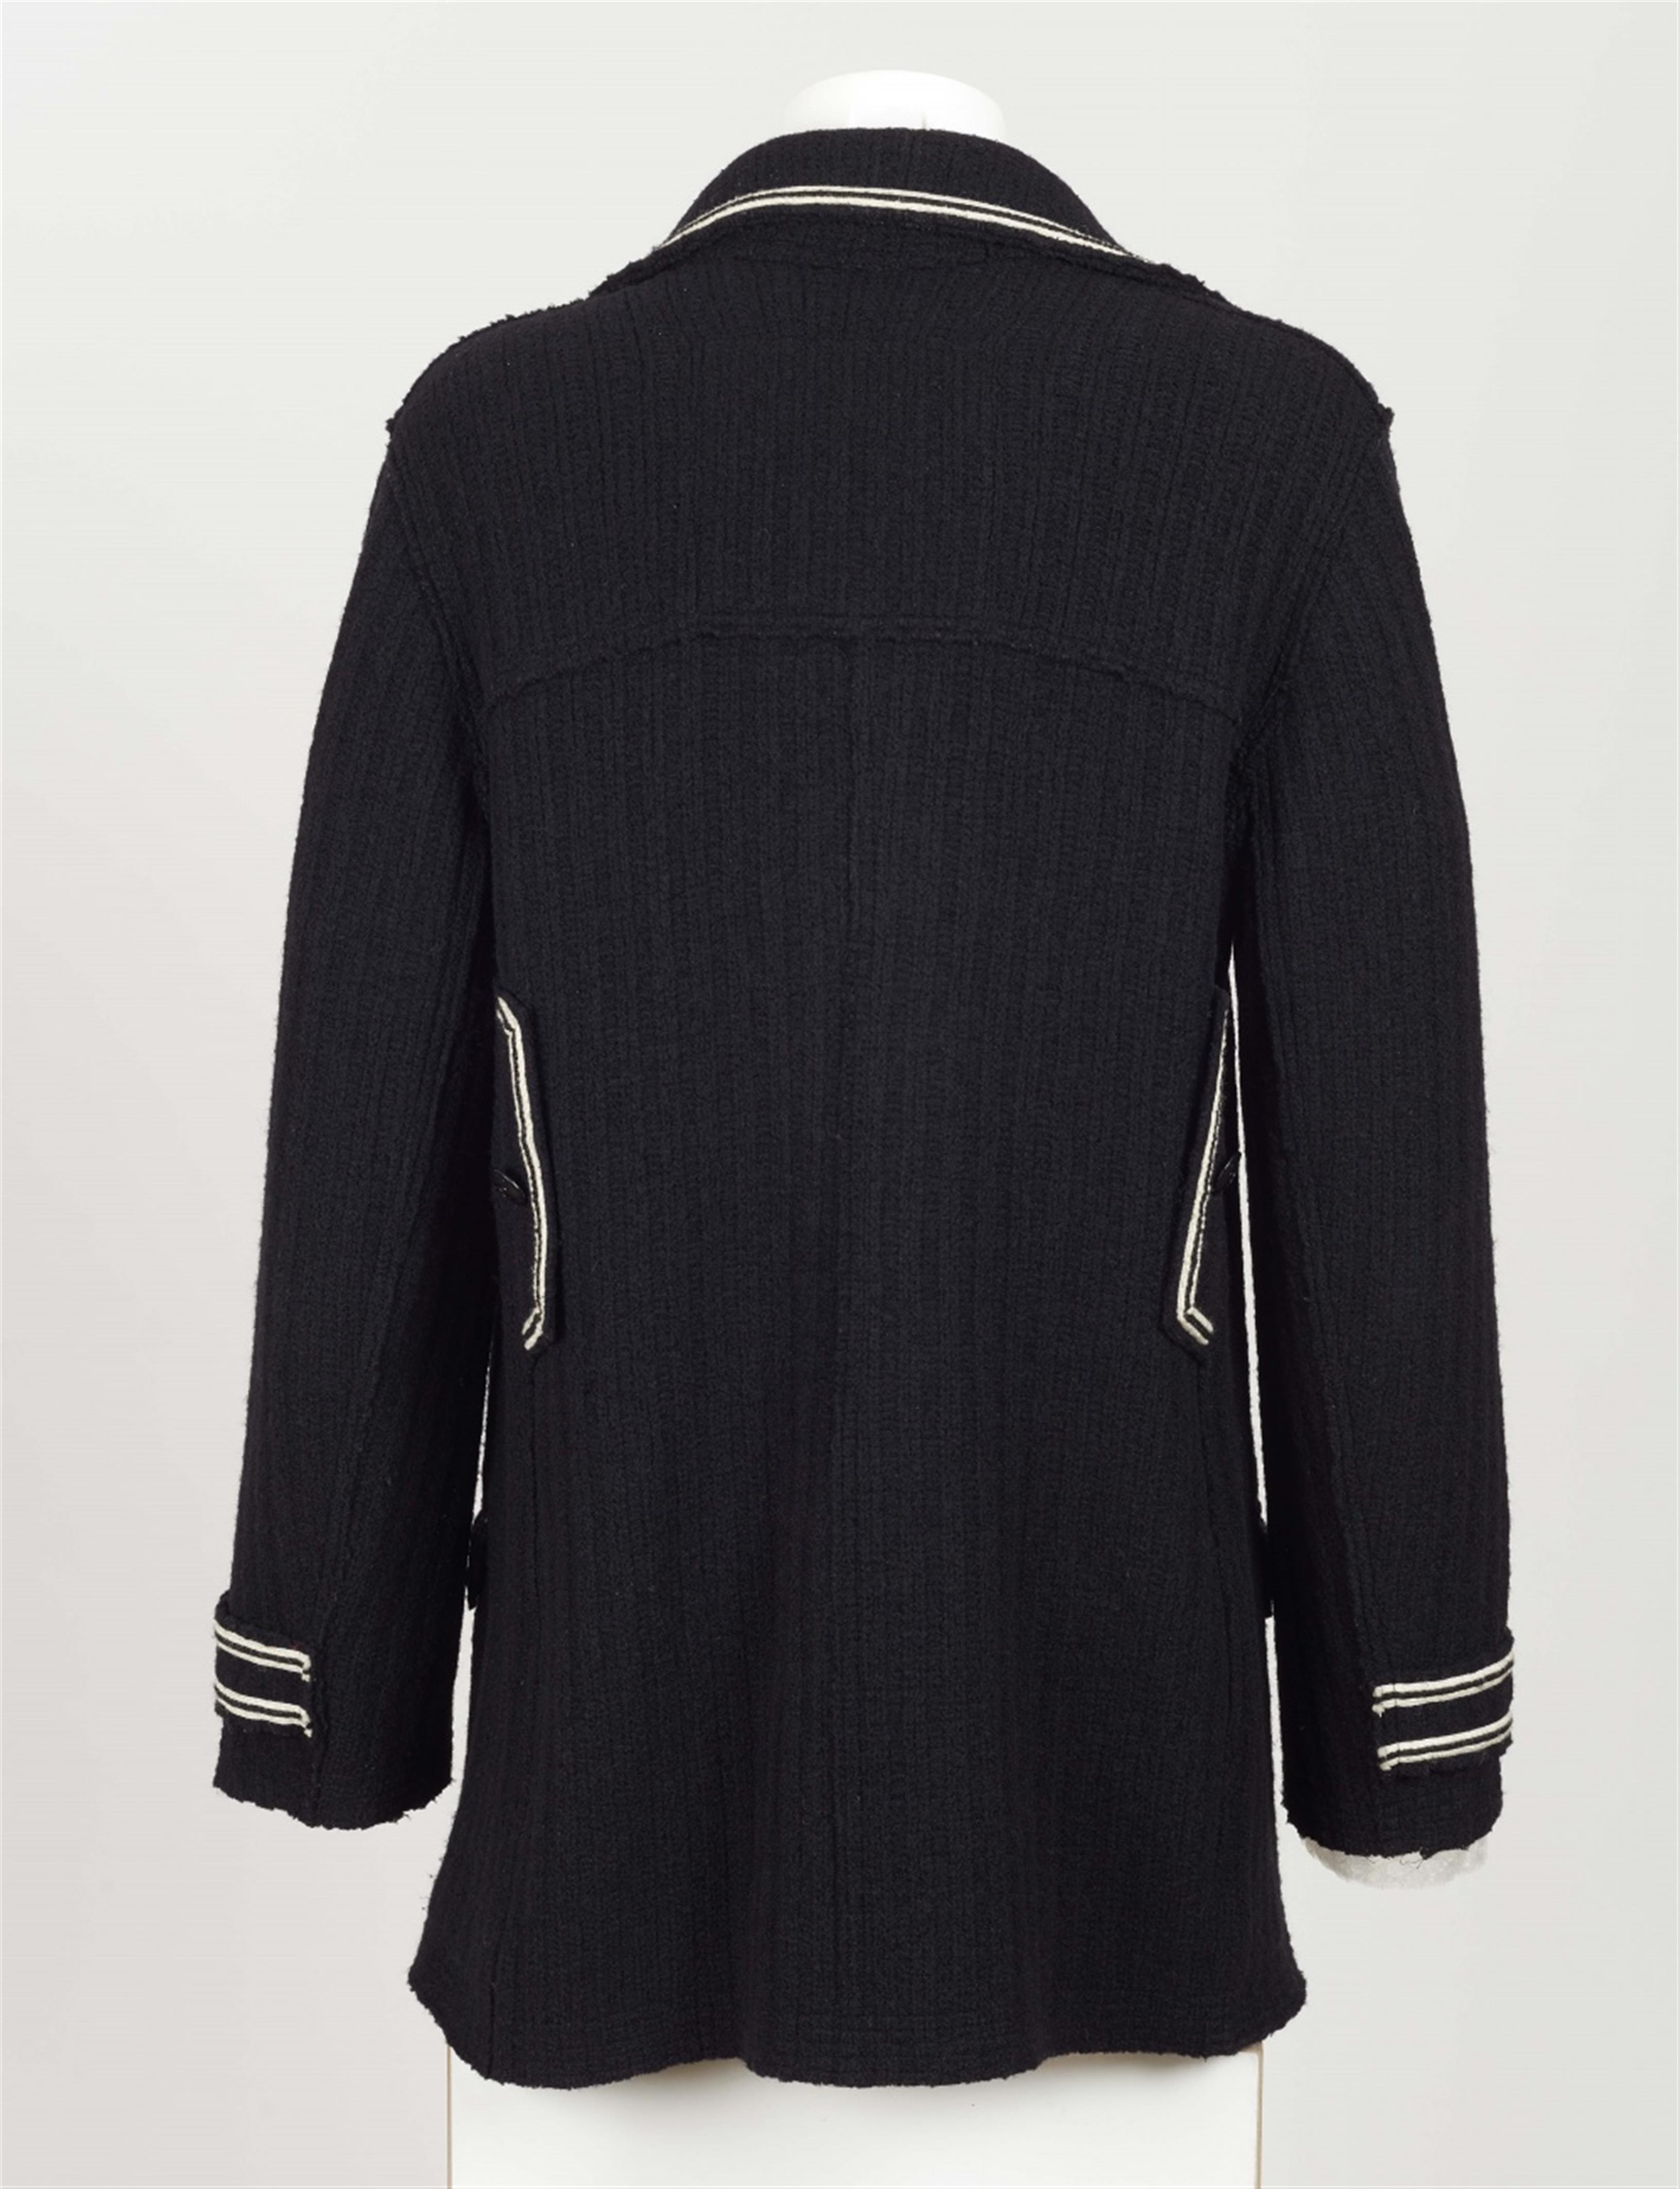 A Chanel men's pea coat, Autumn 2007 - image-2